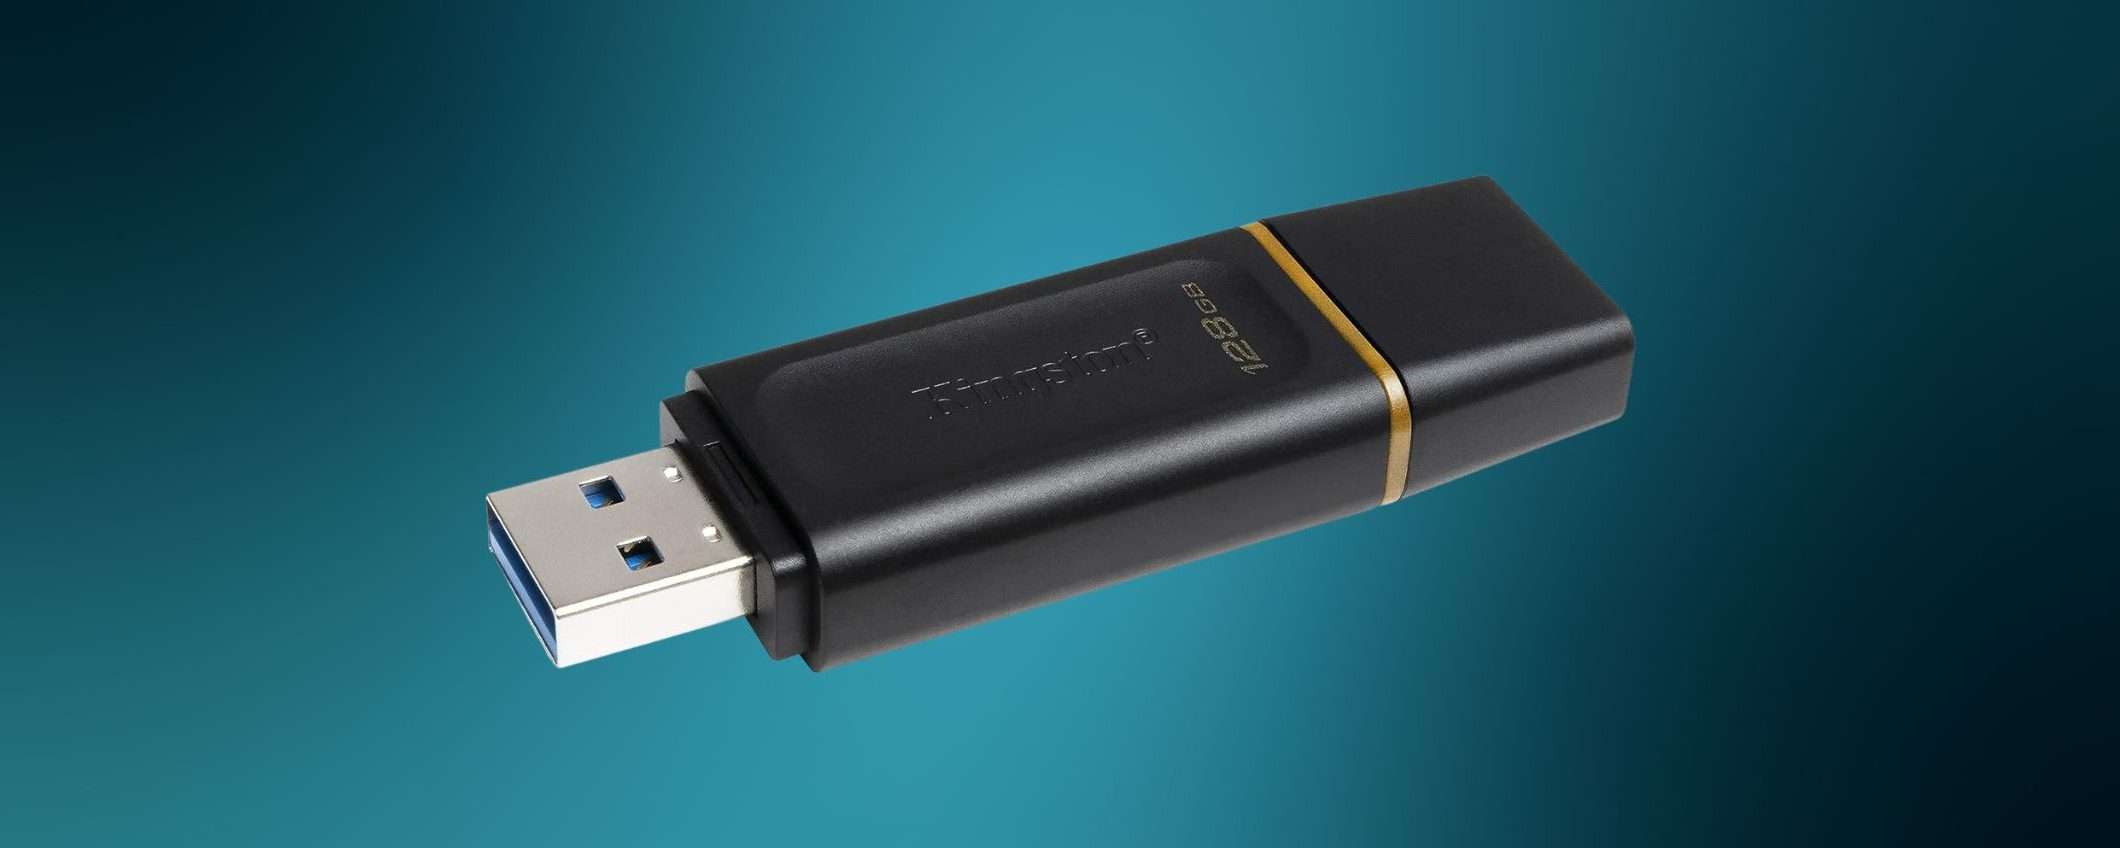 Flash Drive USB 3.2 Kingston 128GB a prezzo STRACCIATO su Amazon (-50%)